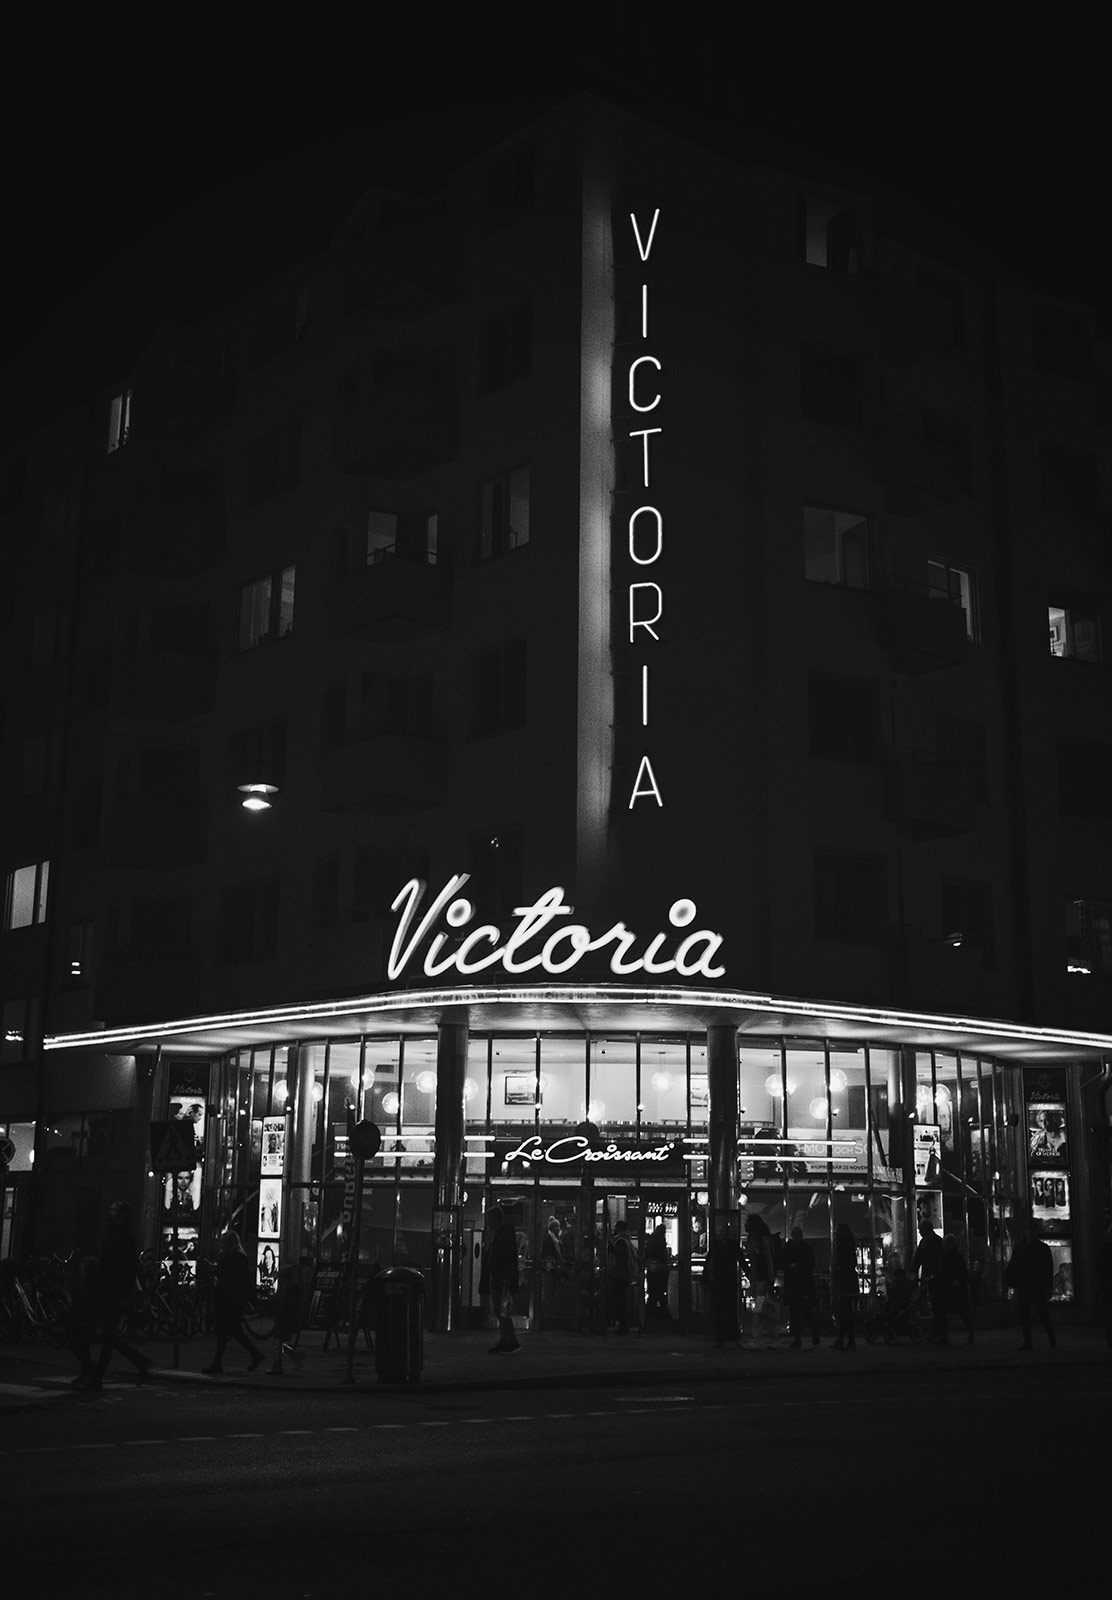 Neon Victoria sign